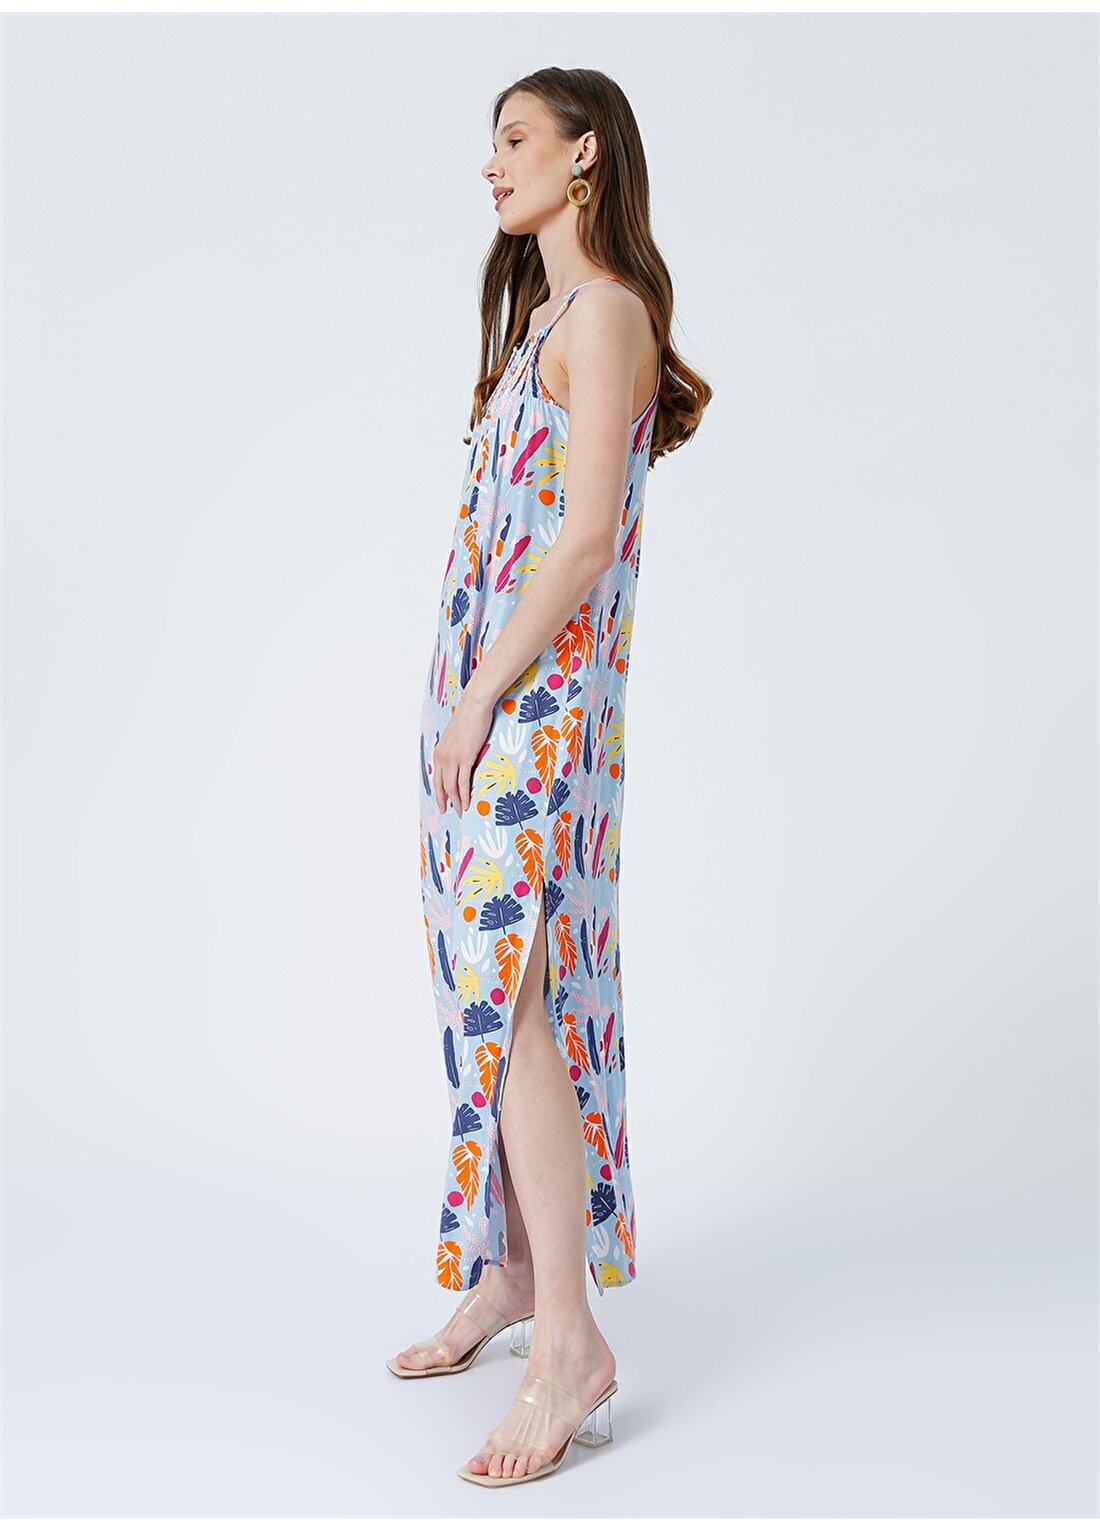 Fabrika Arissa-1 Kare Yaka Geniş Fit Desenli Çok Renkli Kadın Maksi Boy Elbise